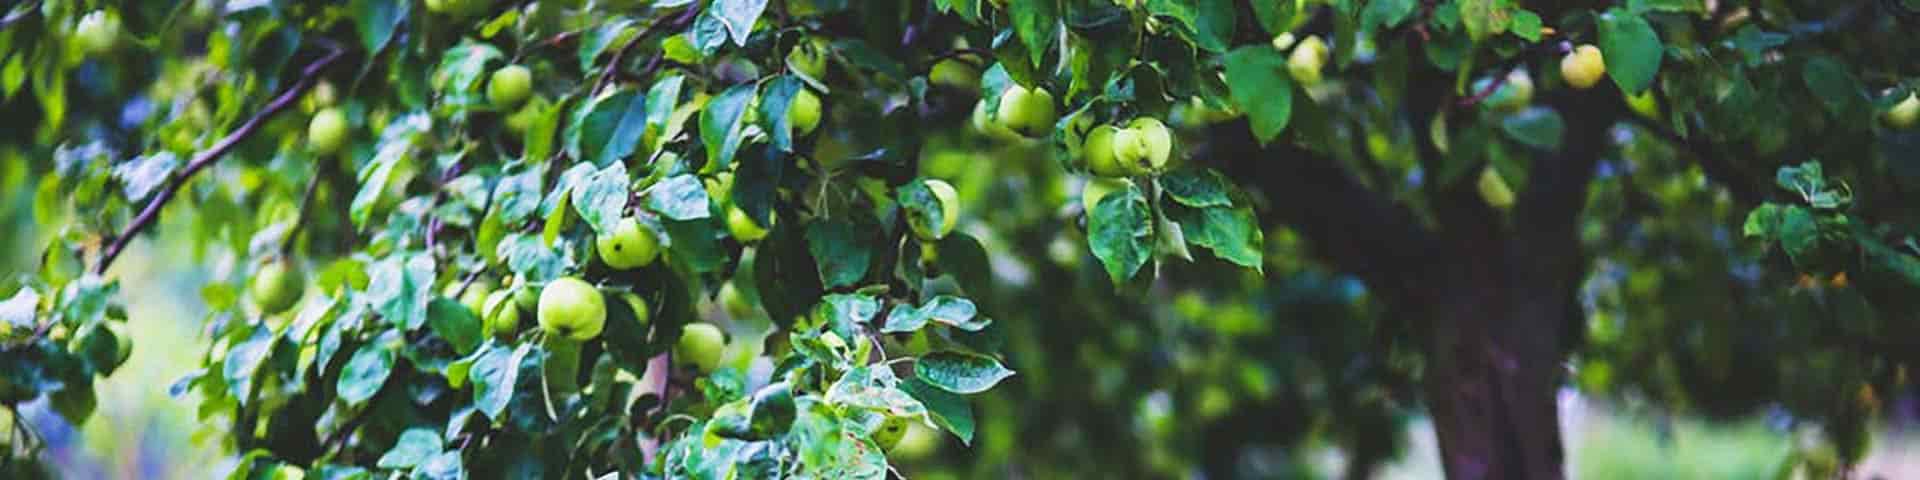 Obstbaum Apfelbaum im Herbst mit vielen reifen Äpfeln behangen